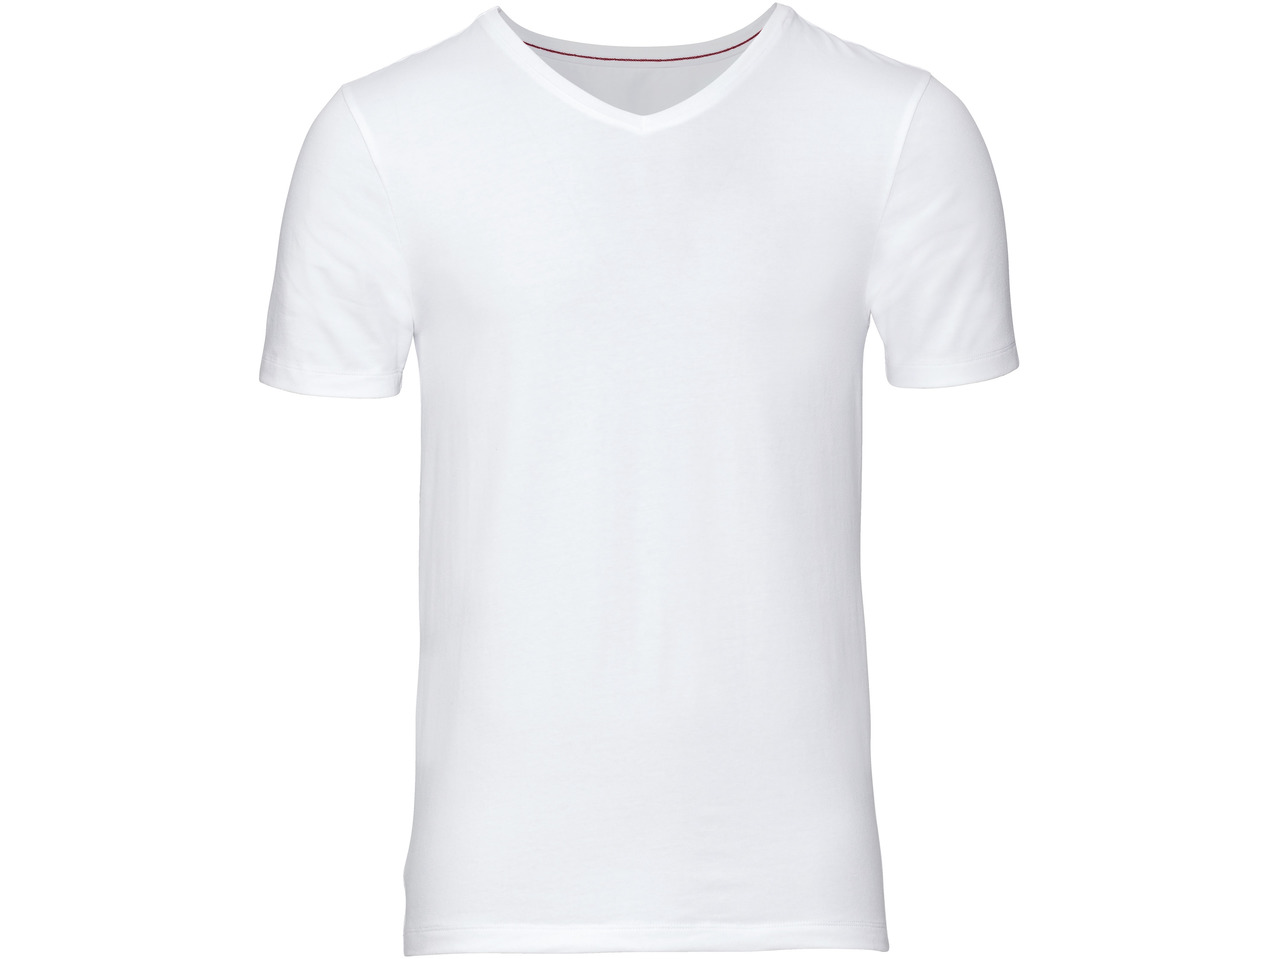 LIVERGY(R) T-shirt